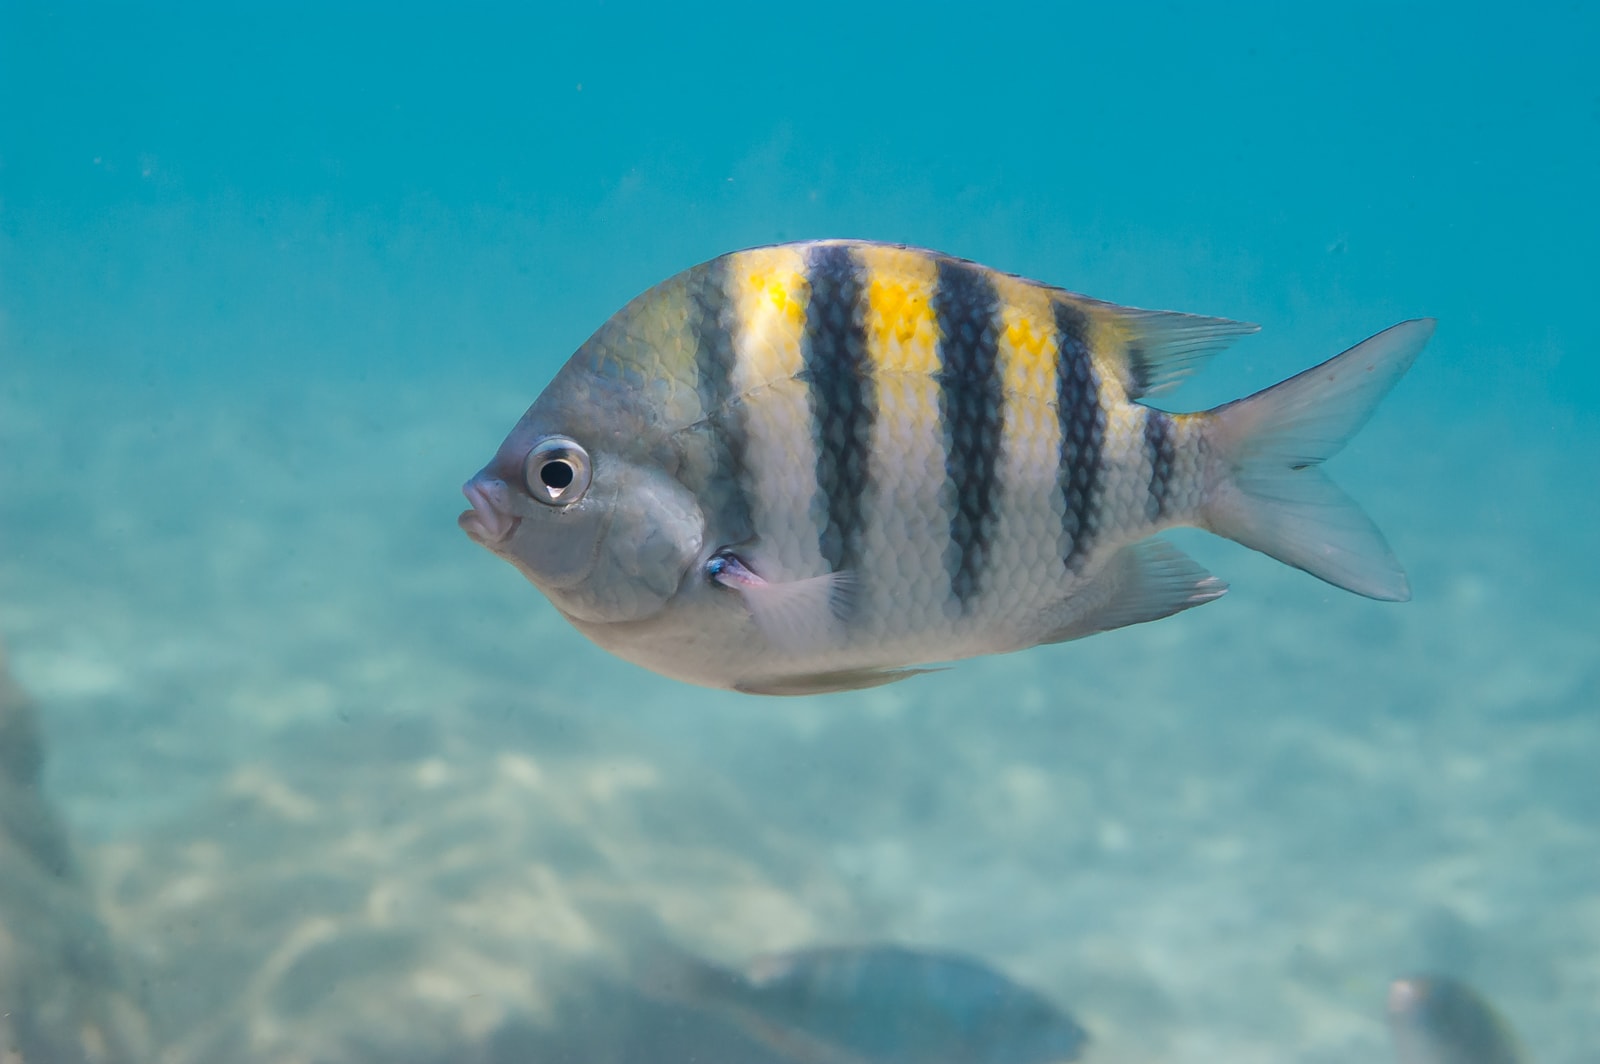 A Sergeant major fish (Abudefduf saxatilis) in the Caribbean Sea